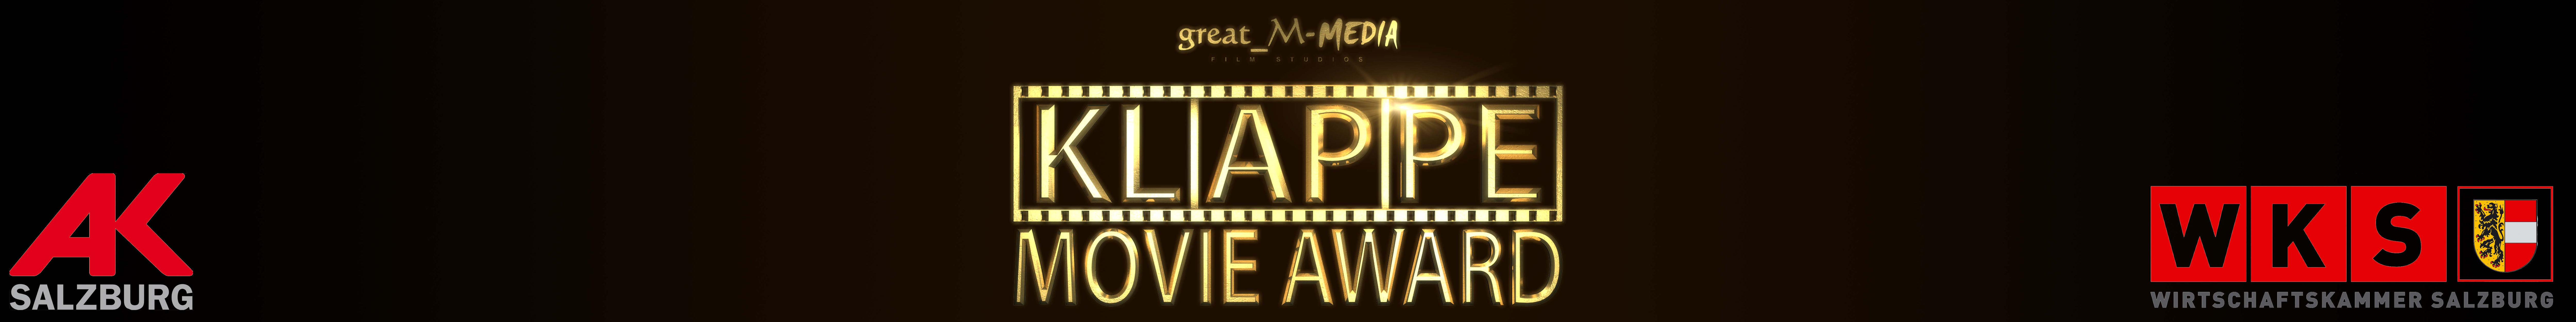 Klappe great_M-Media Movie Aword